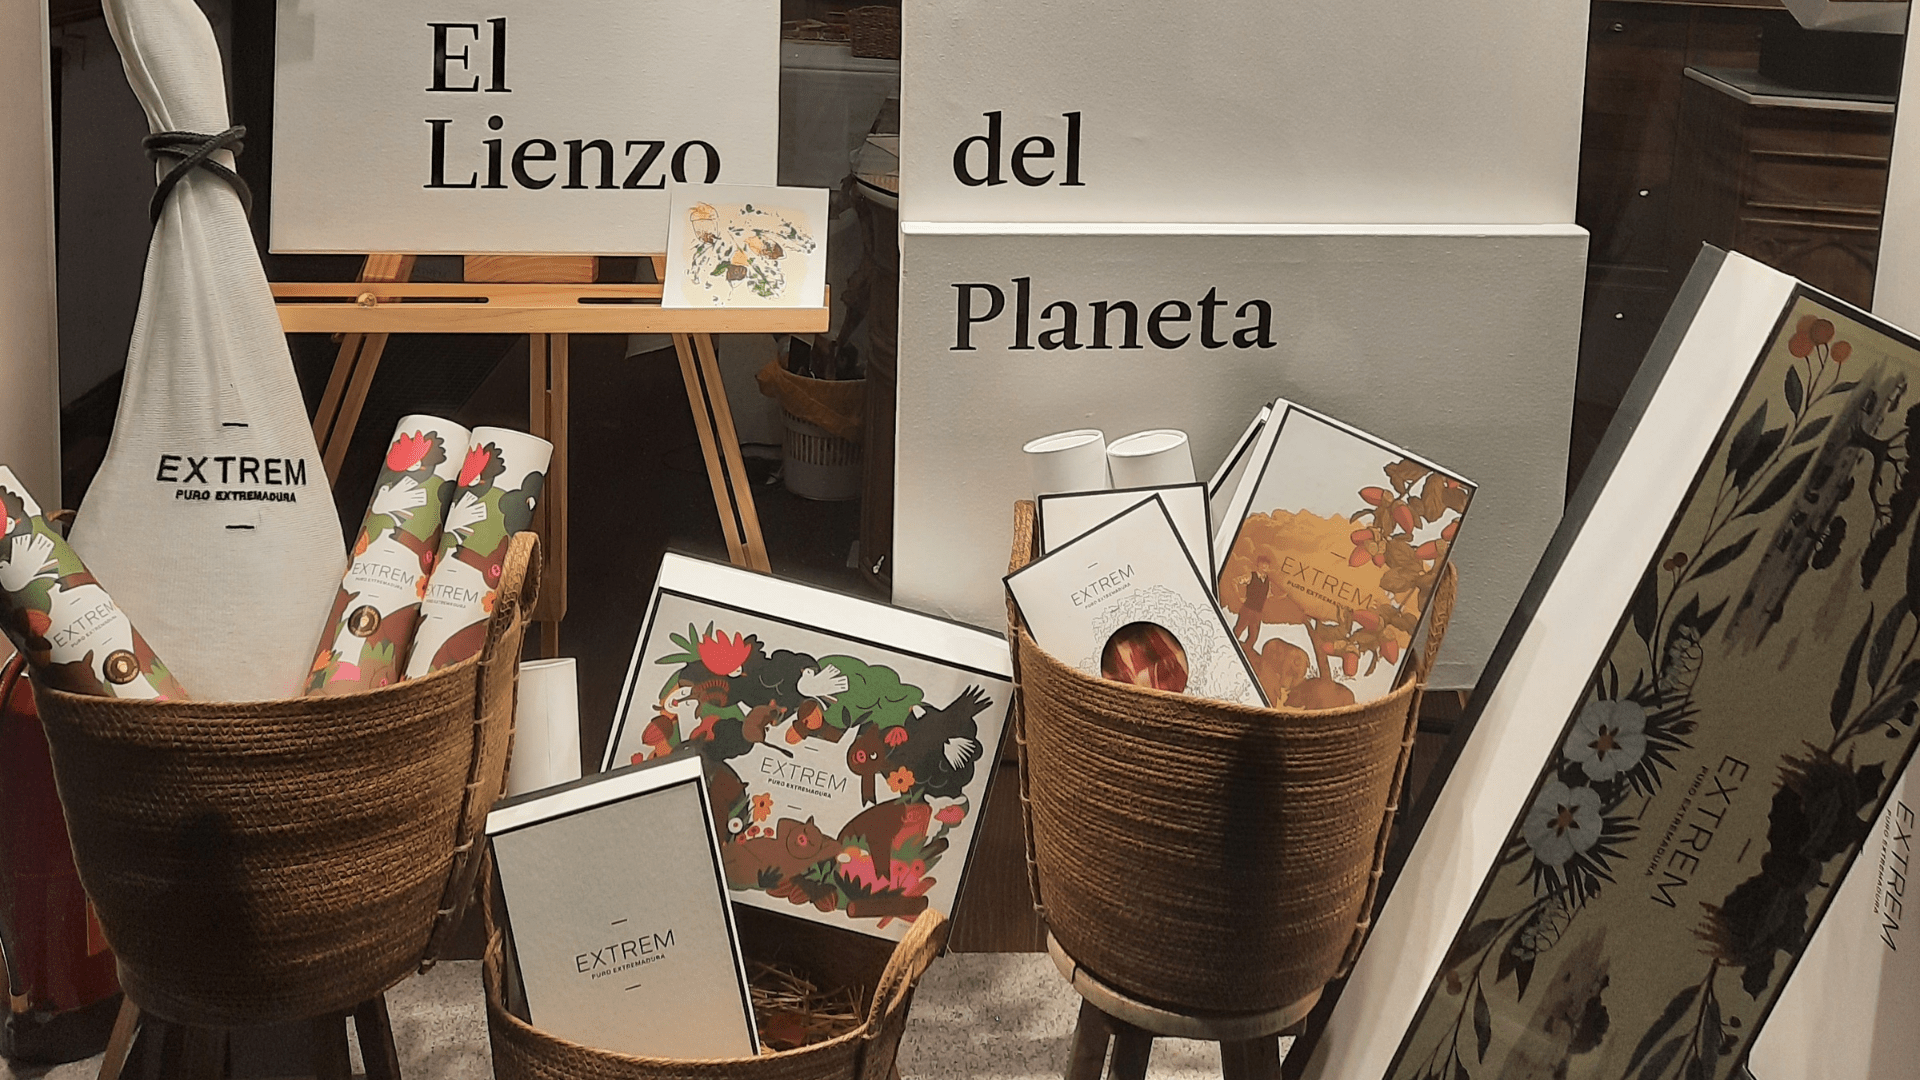 “El lienzo del planeta”, las nuevas ediciones limitadas de Extrem Puro Extremadura